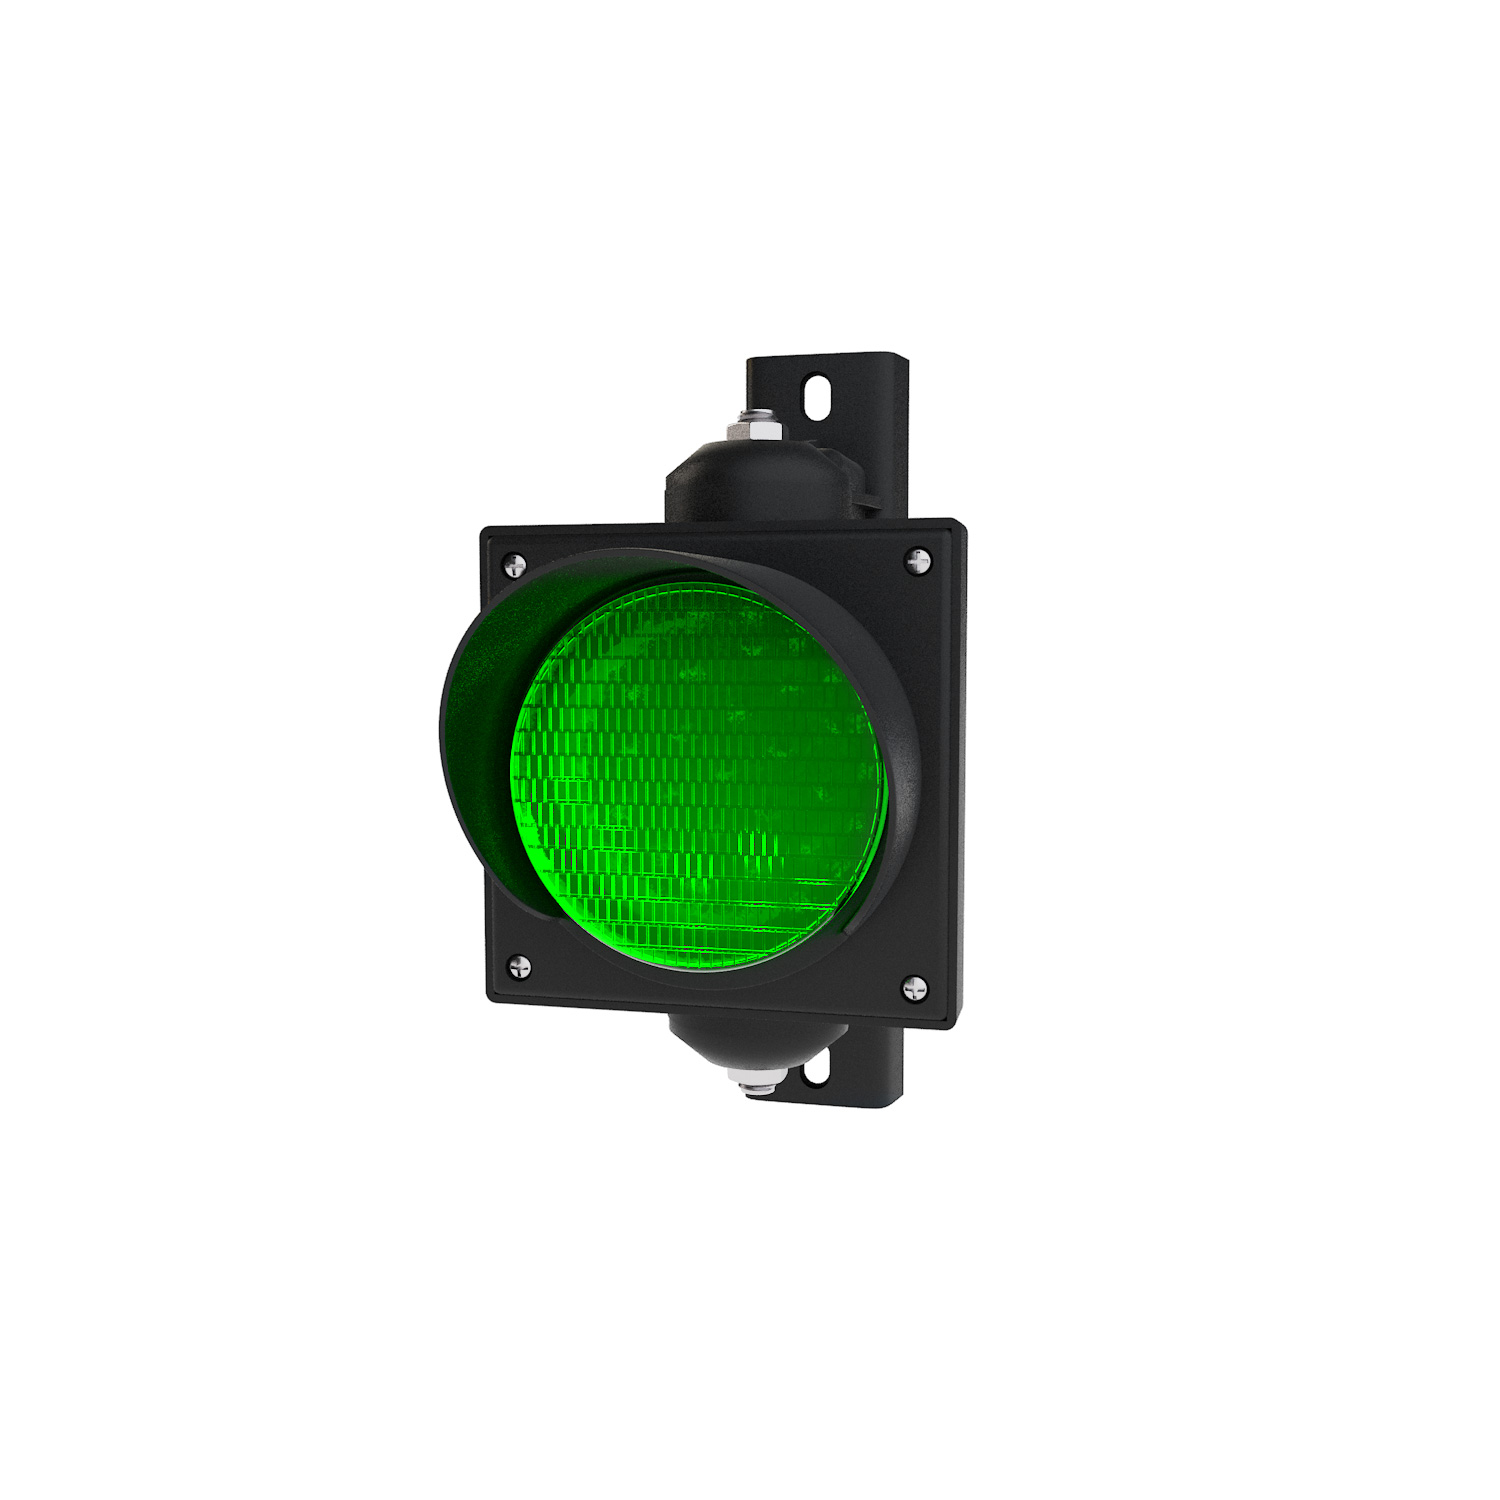 Ampel mit 100 mm grünem LED-Modul und einstellbarer Halterung